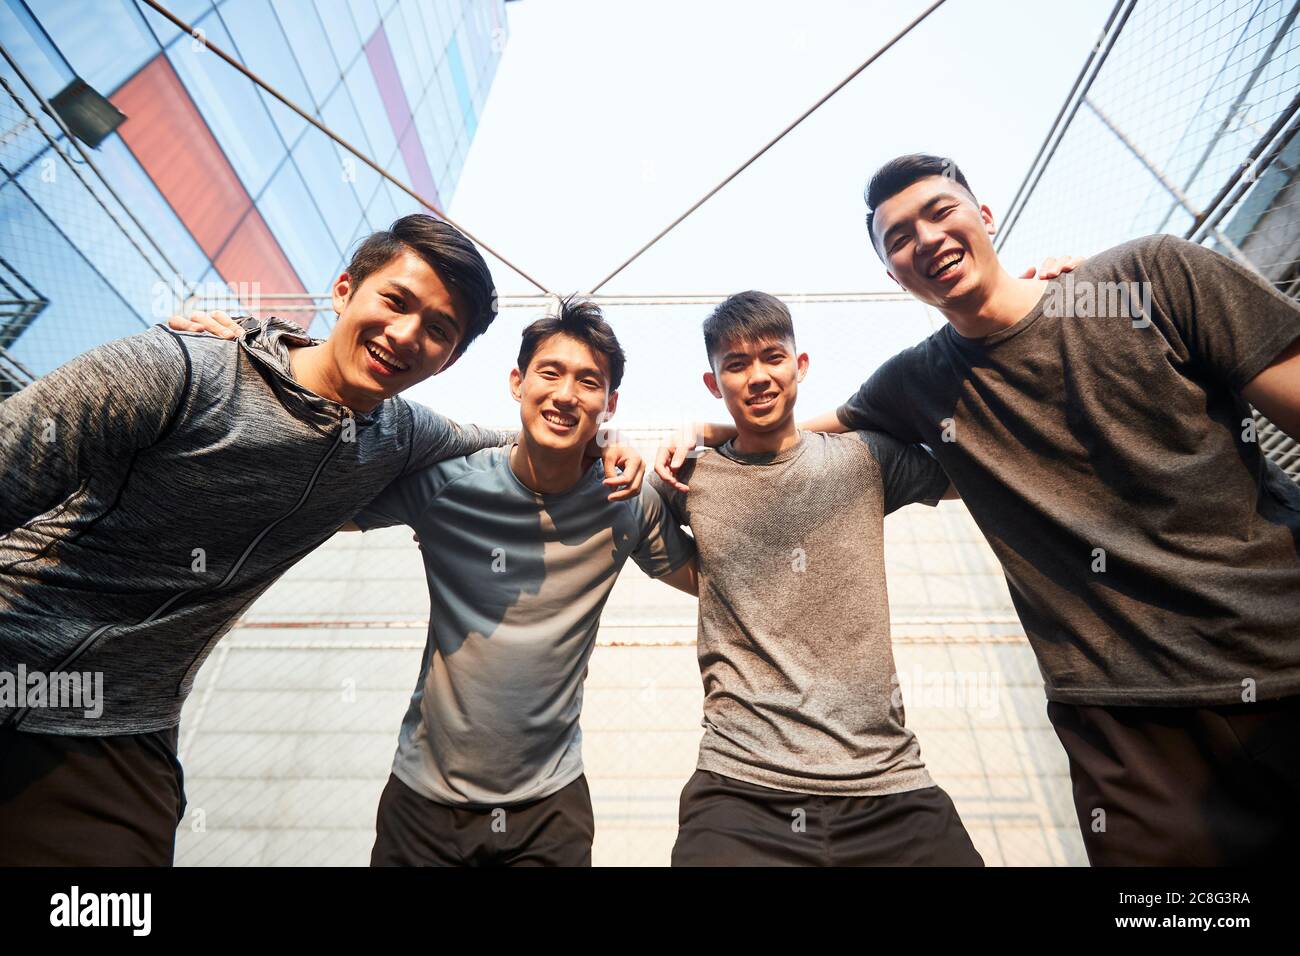 Porträt eines Teams junger asiatischer Athleten, die lächelnd auf die Kamera blicken Stockfoto